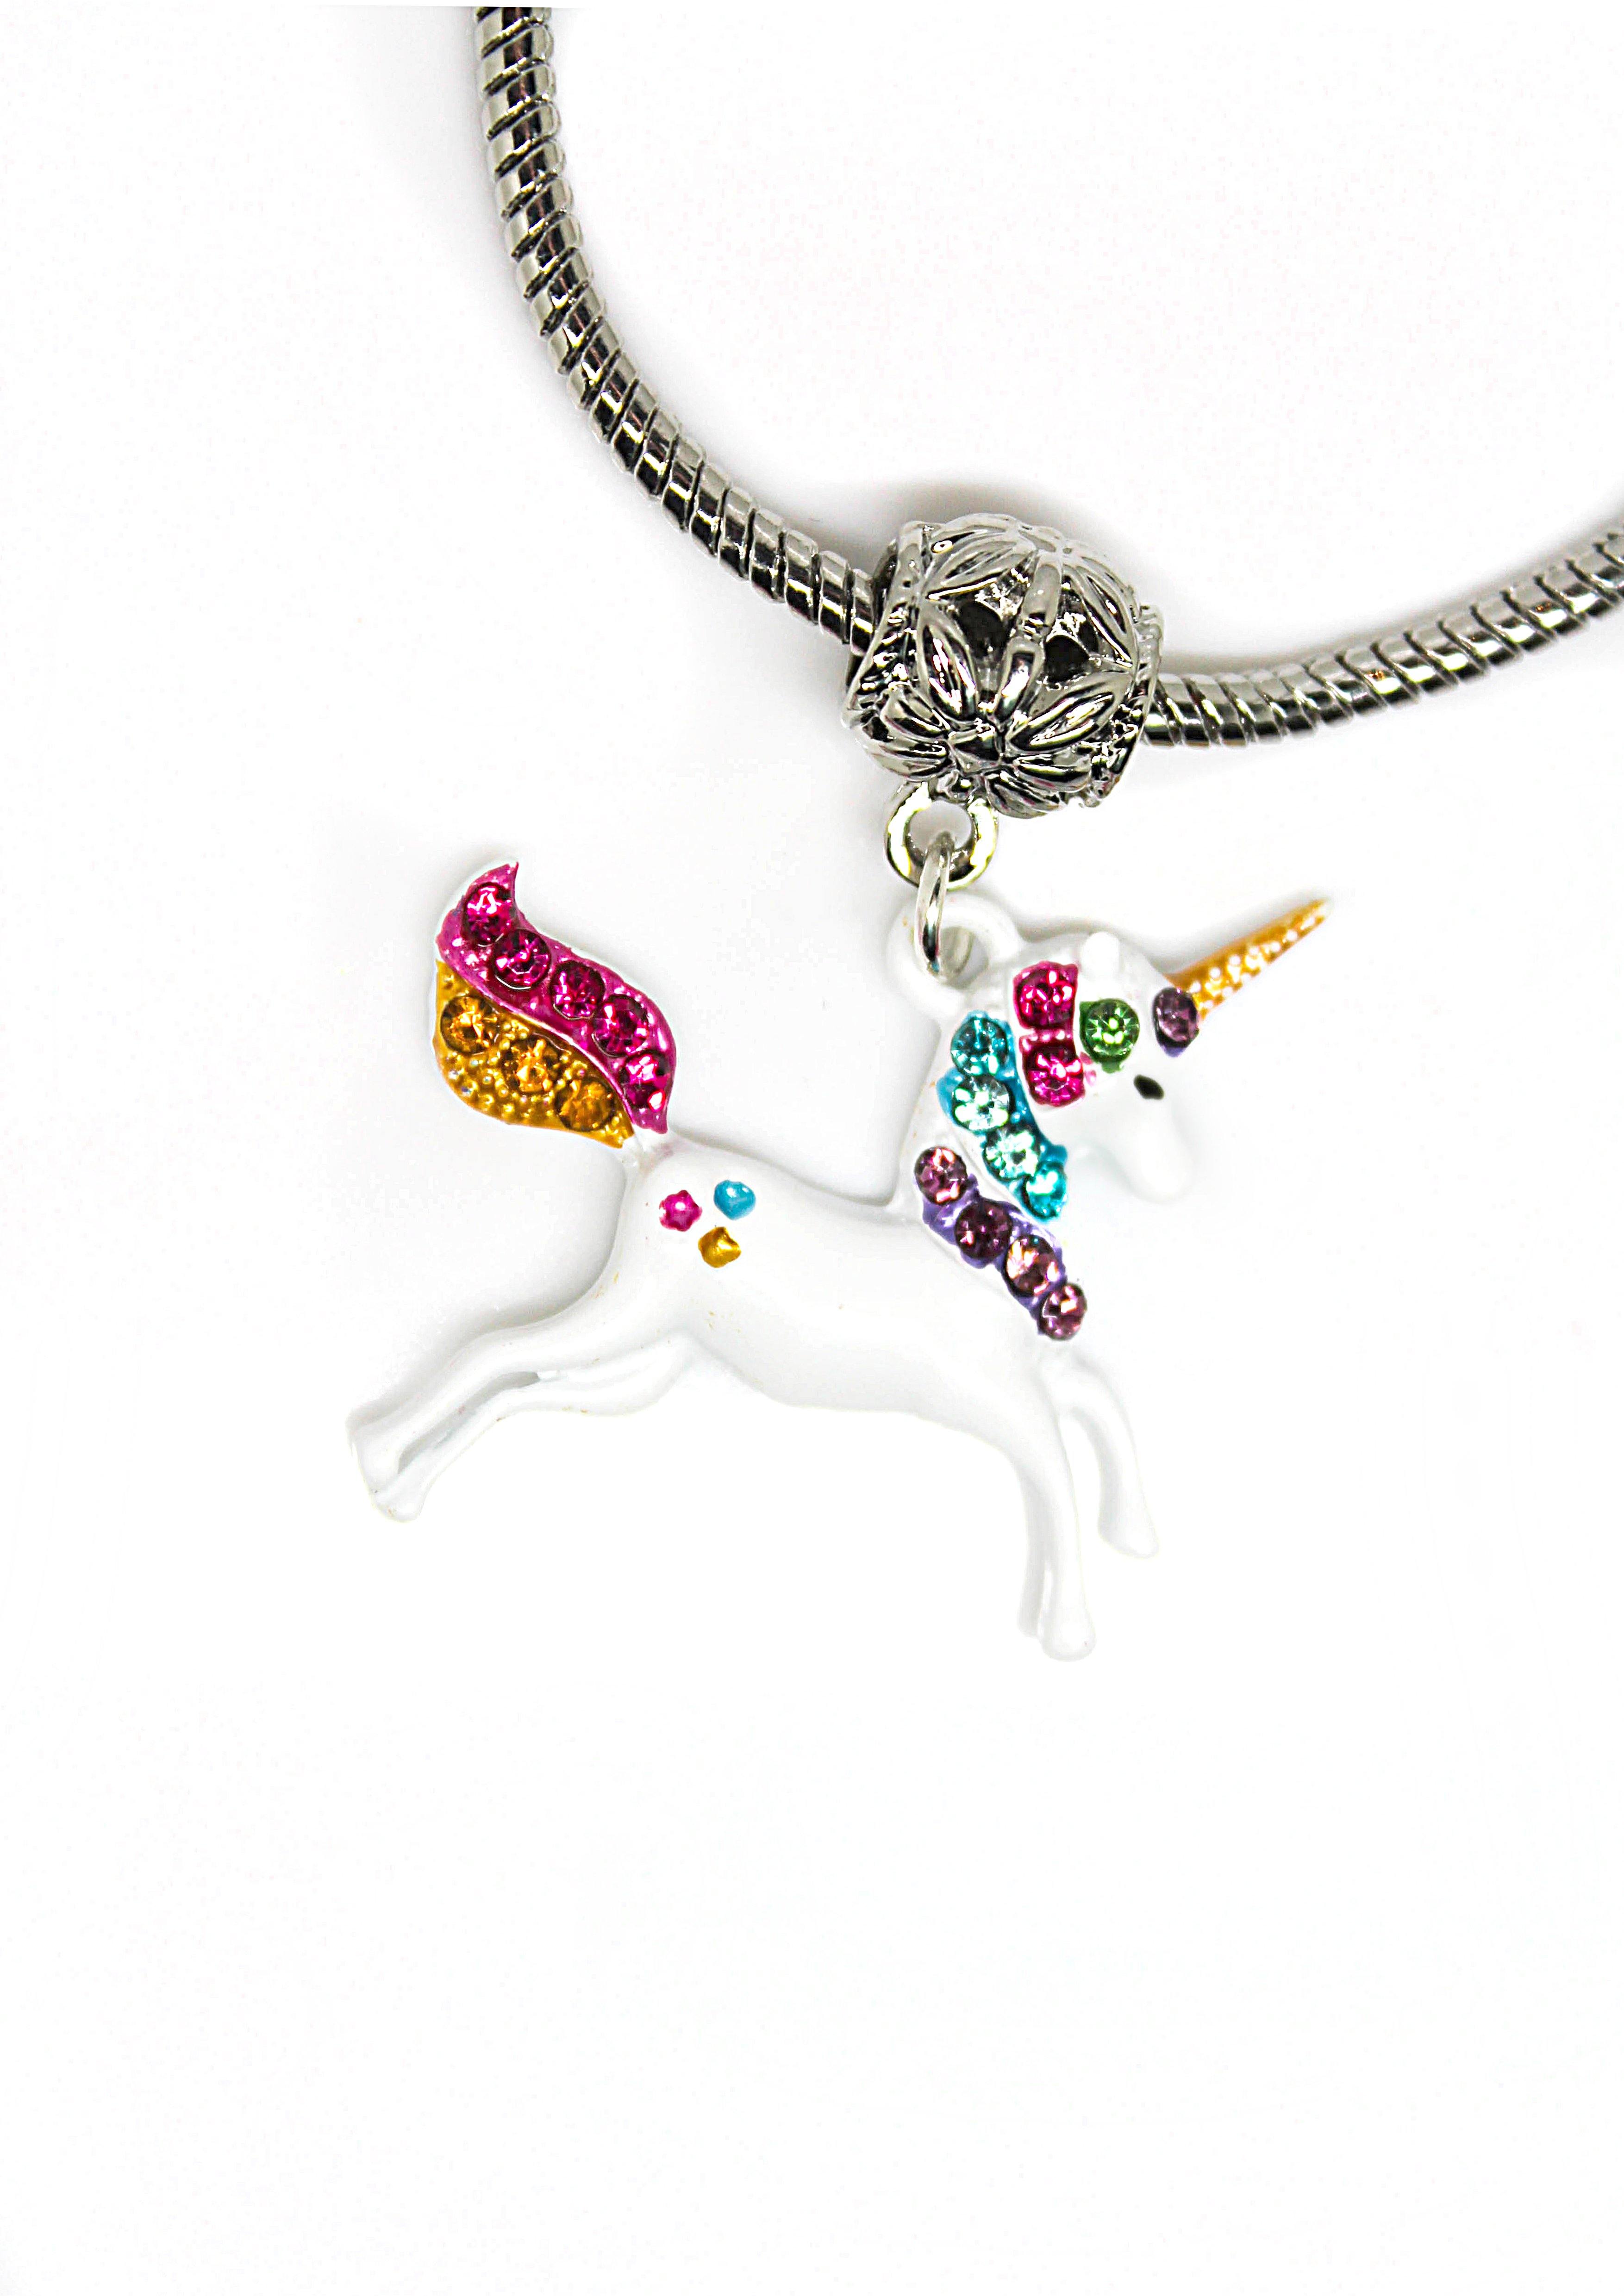 Unicorn Body Charm Bracelet - Wildtouch - Wildtouch